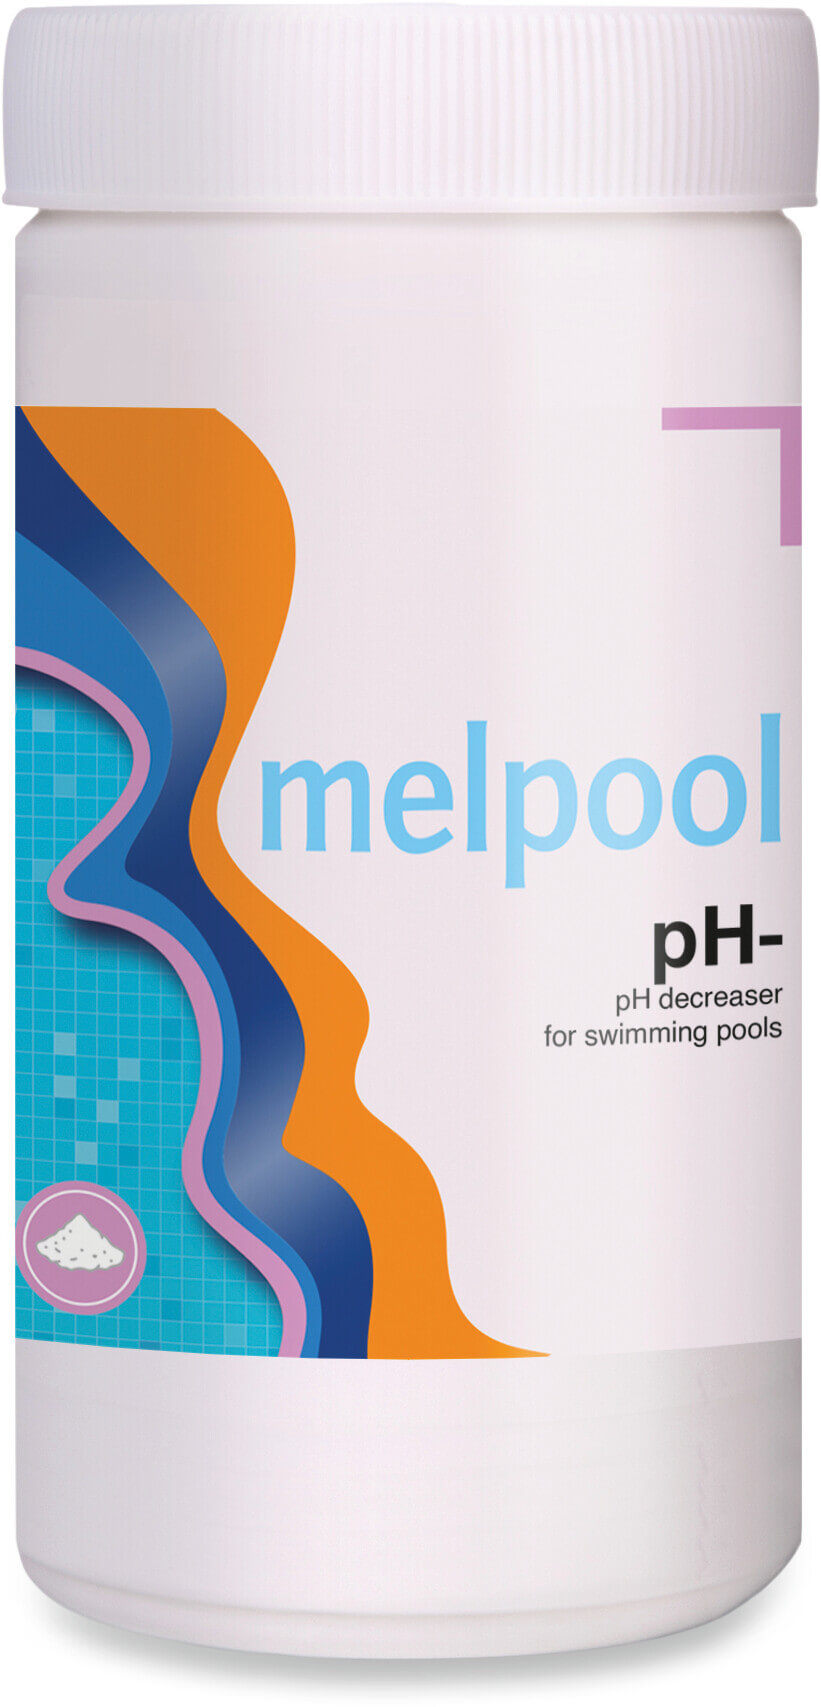 Melpool pH- natriumbisulfat för att minska pH 1500g